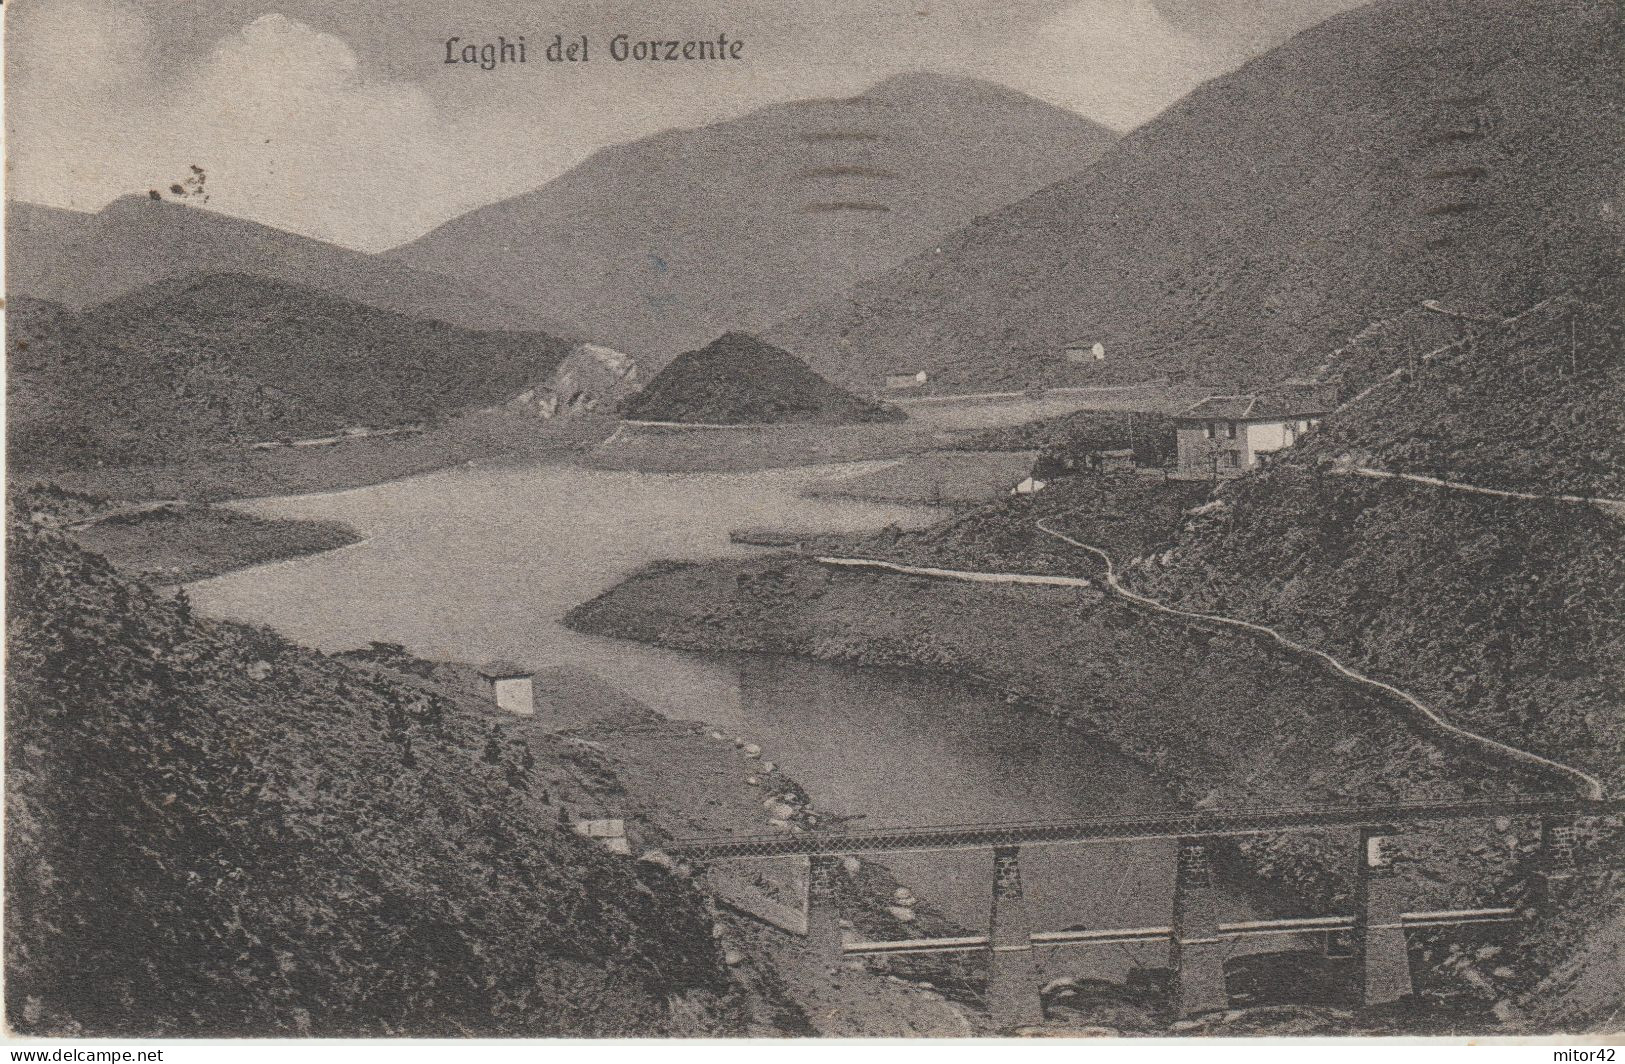 155-Laghi Del Gorzente-Bosio Campomorone Ceranesi-Genova-Alessandria-Liguria-Piemonte-v.1944 X Sarzana-La Spezia - Genova (Genua)